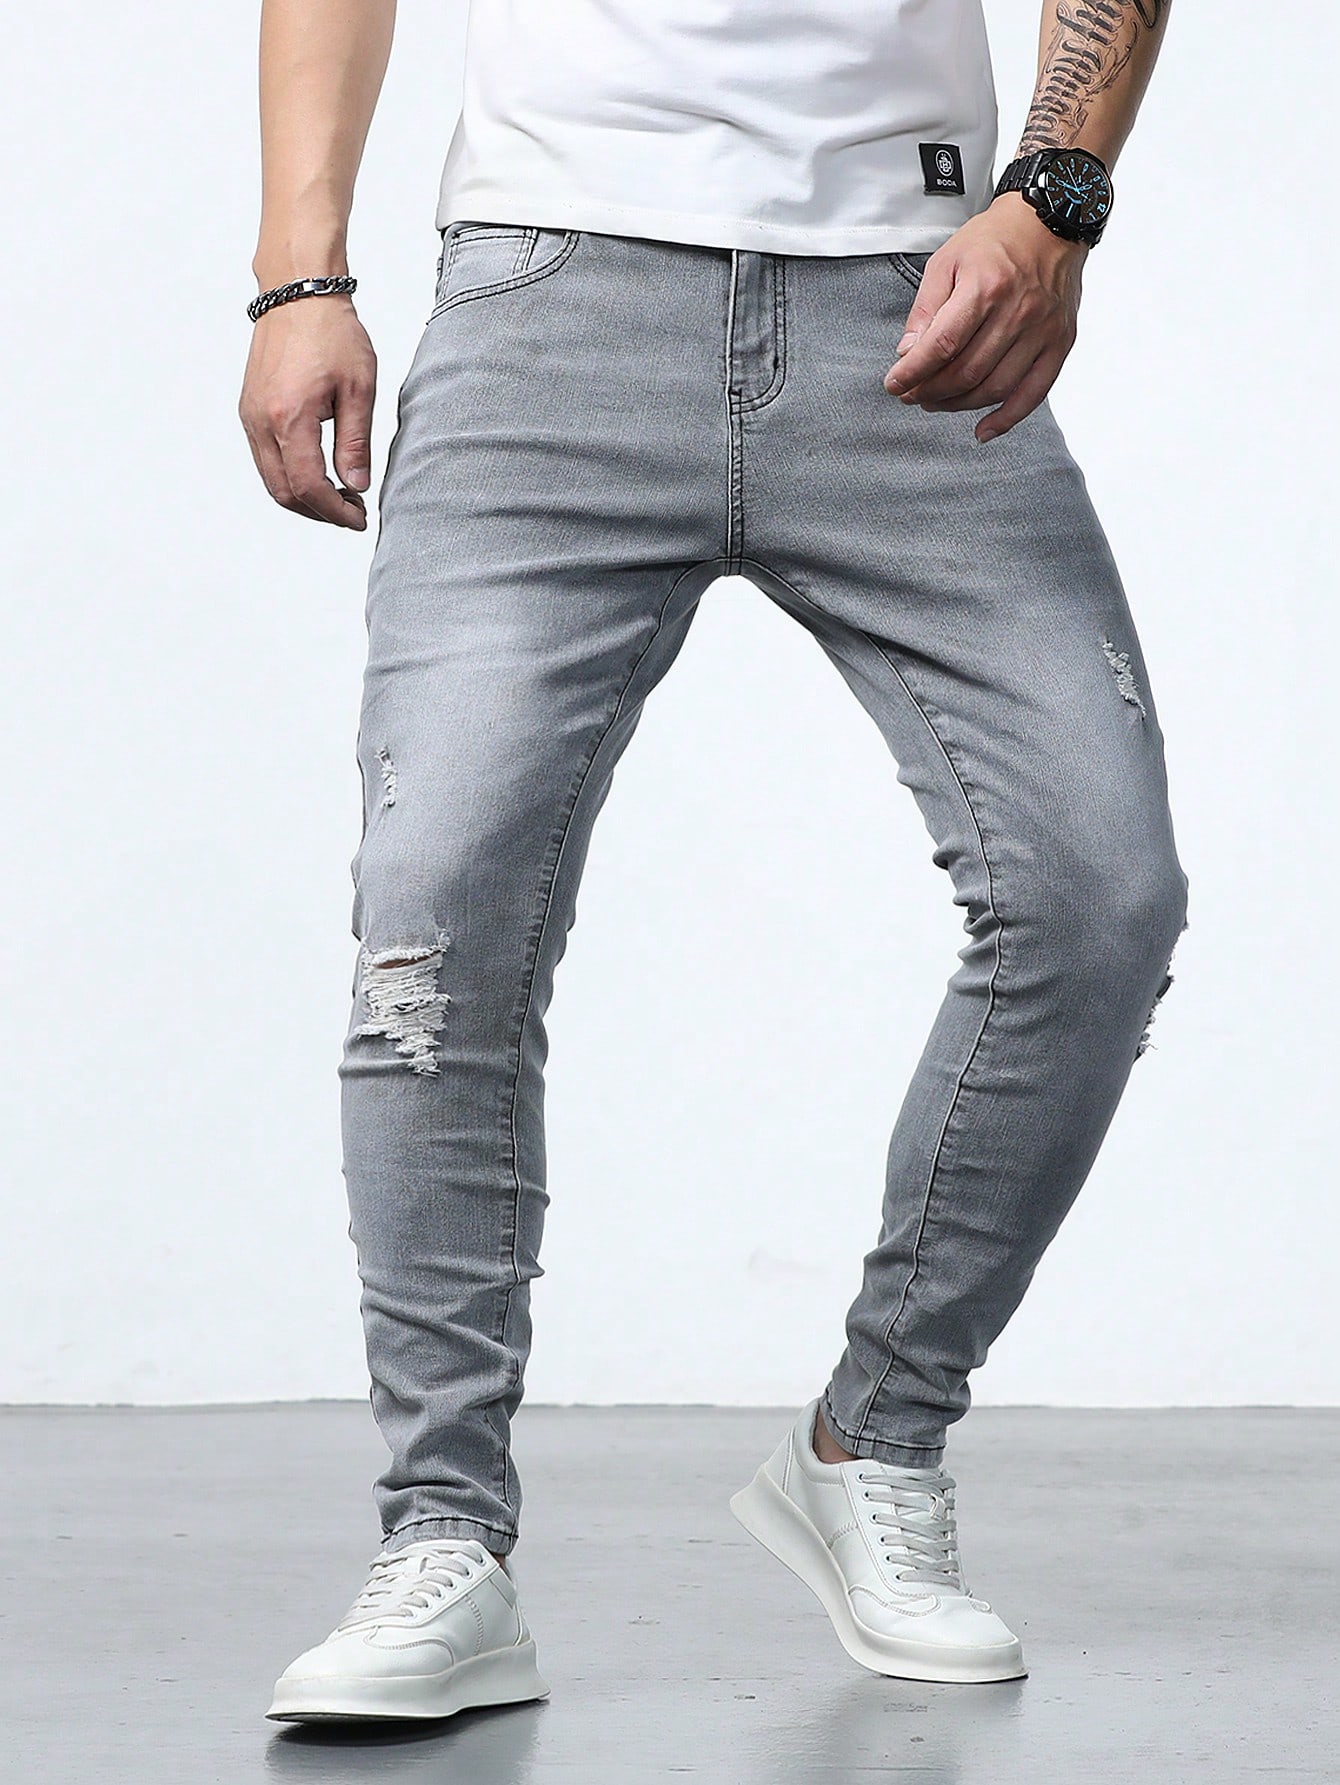 Мужские джинсы скинни с потертостями Manfinity Homme, серый джинсы с потертостями 40 размер новые